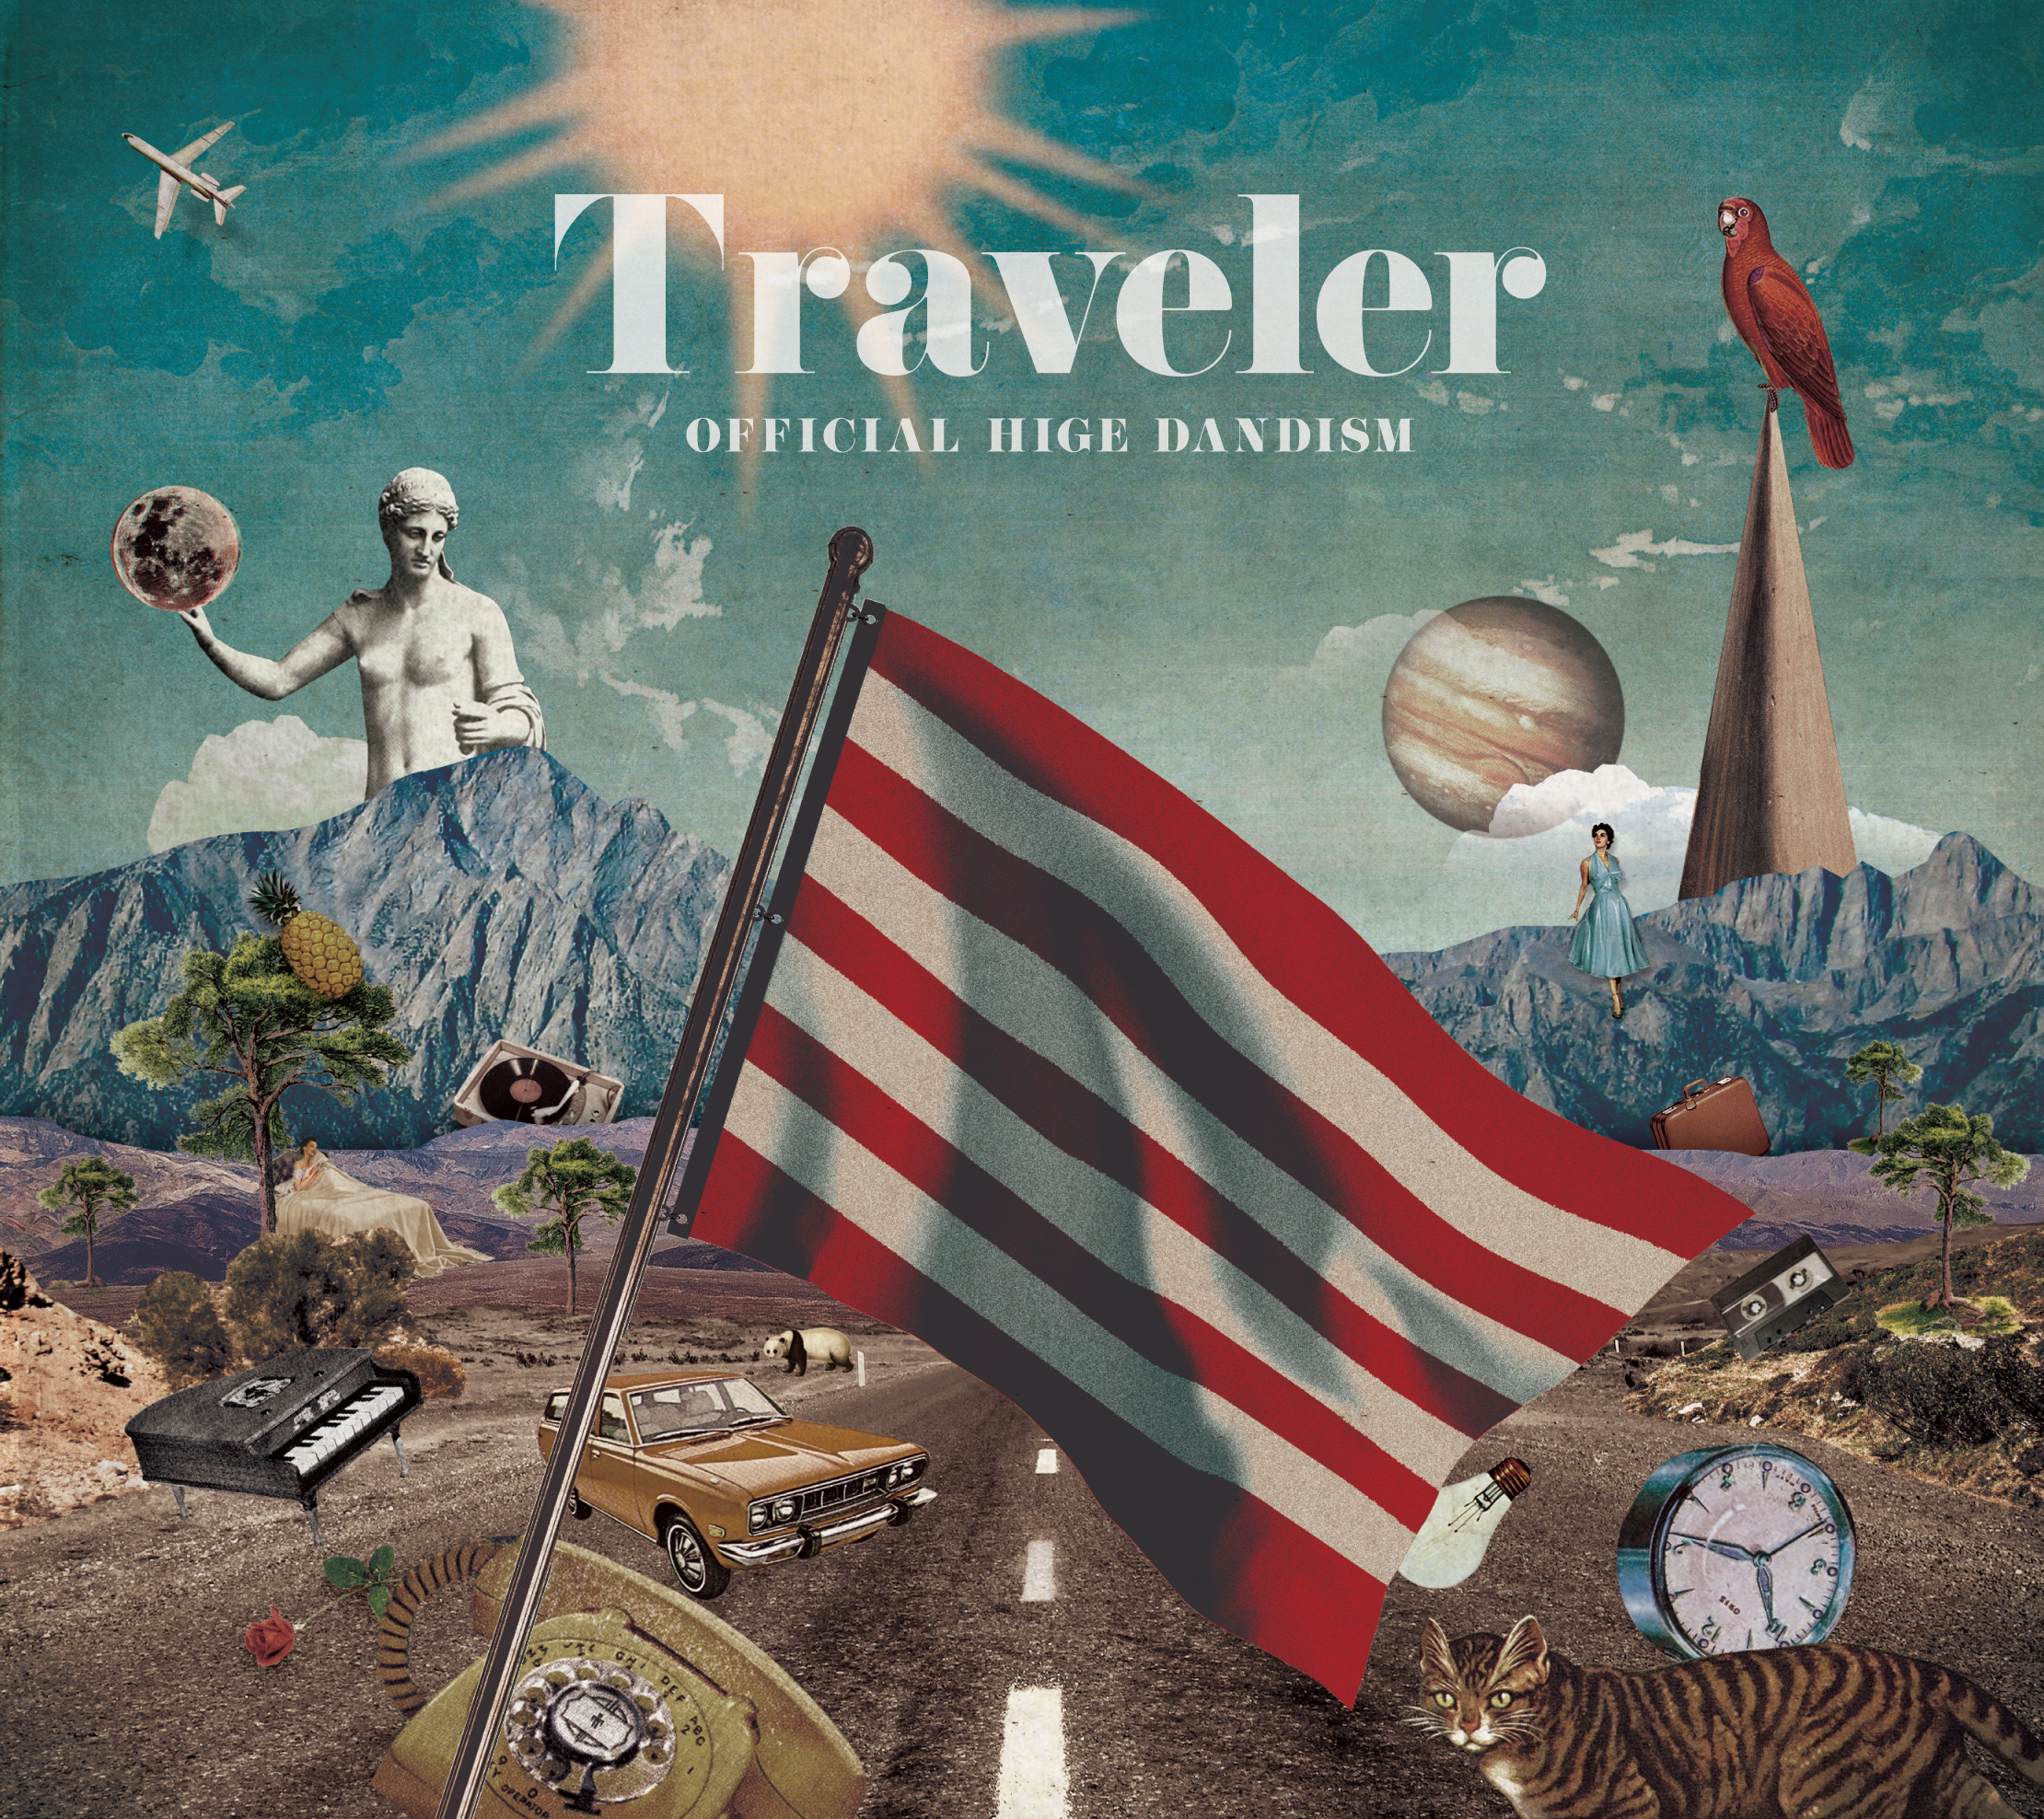 OFFICIAL HIGE DANDISM "Traveler" (CD Only)